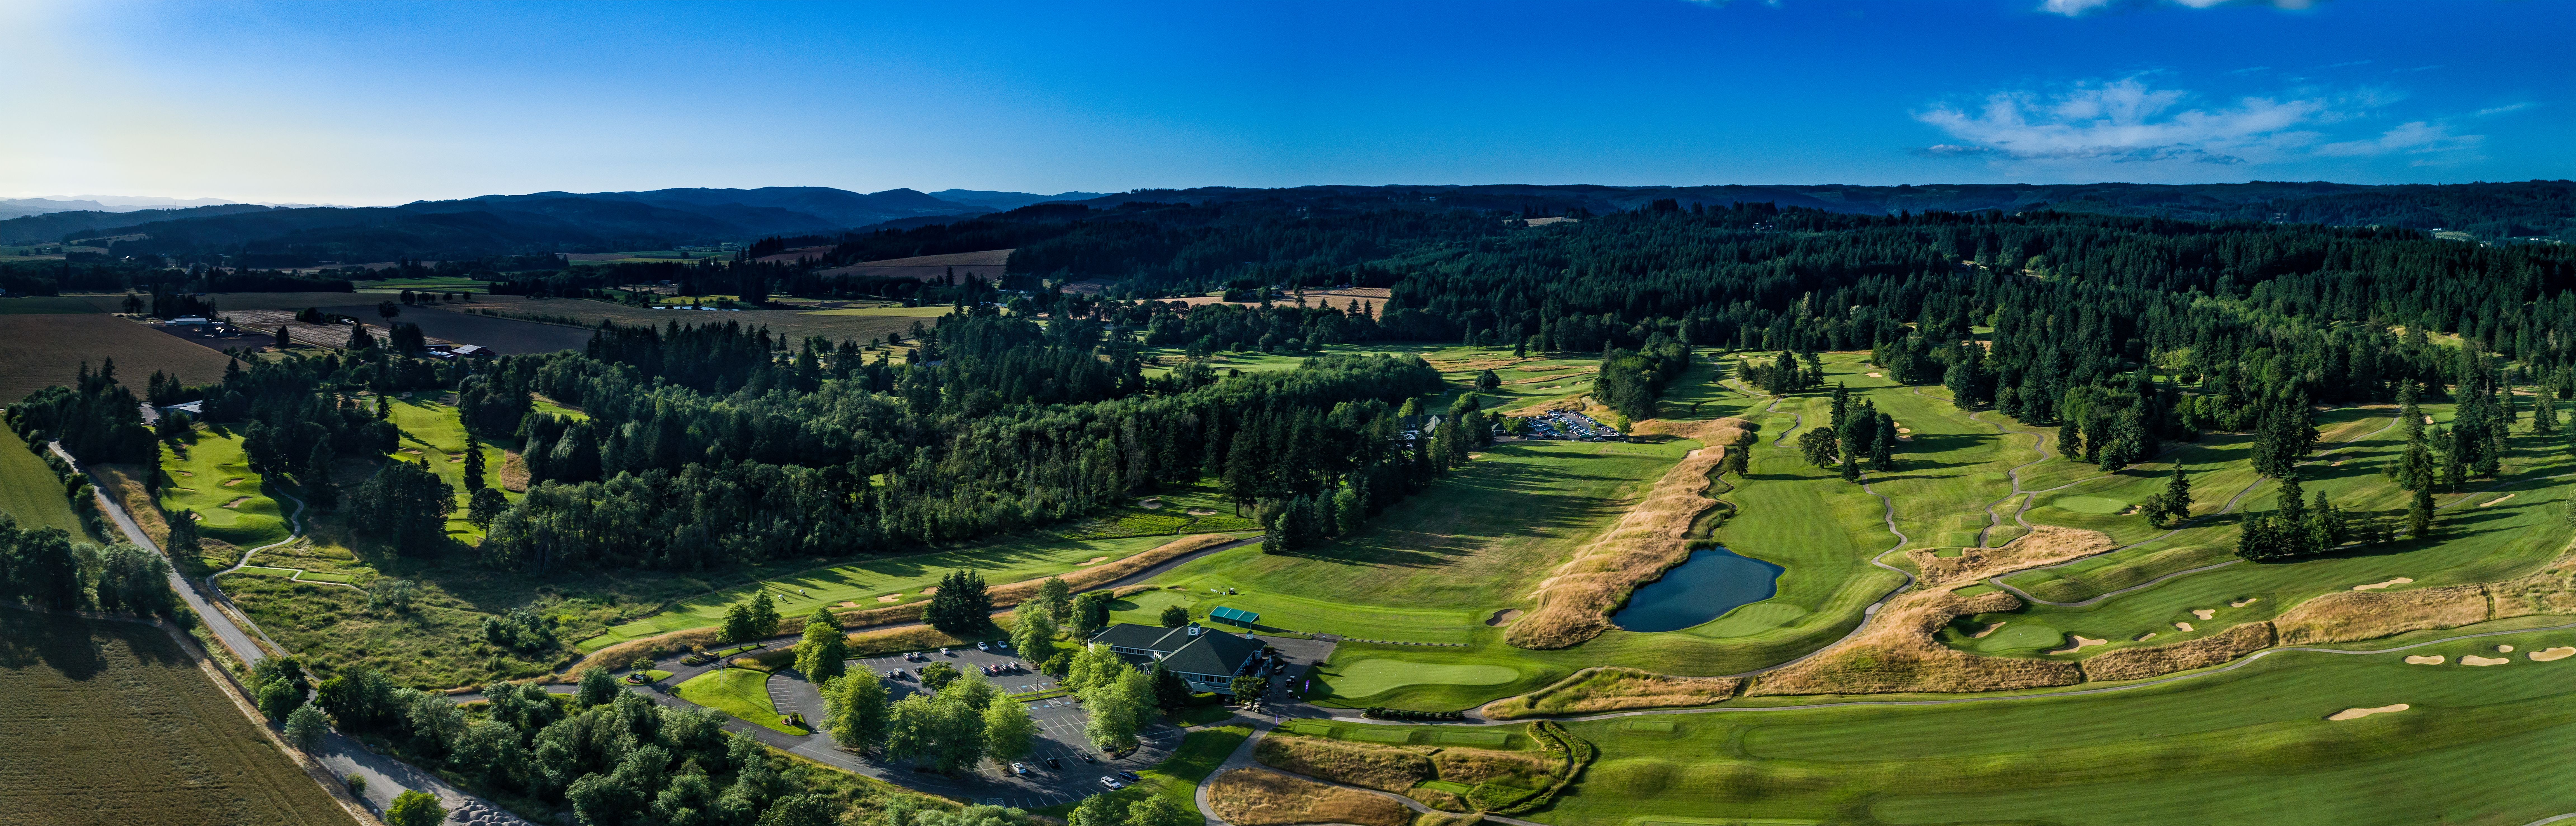 Aerial view of Pumpkin Ridge Golf Club